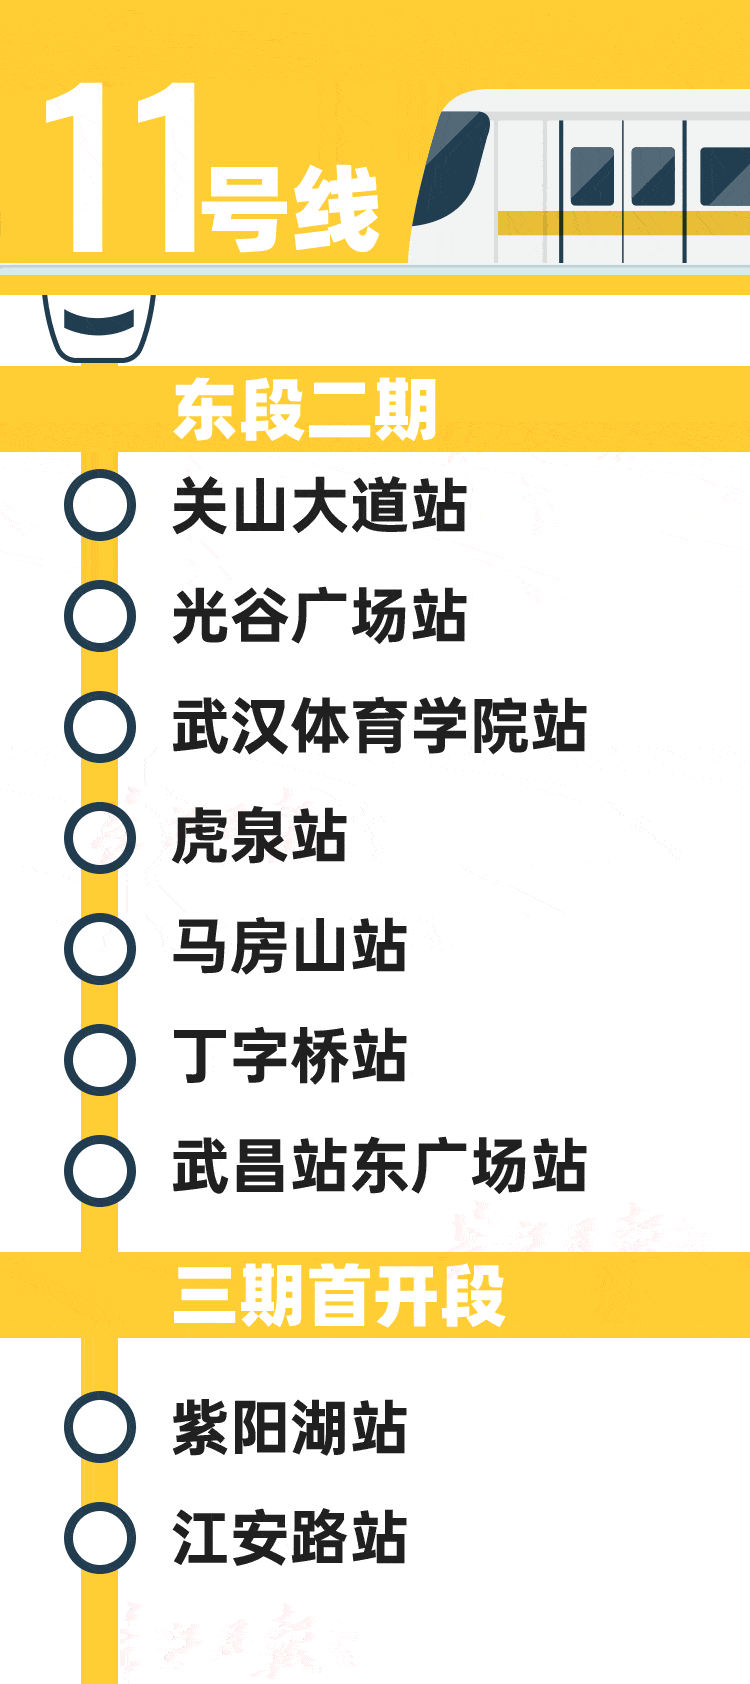 已形成初步方案 武汉第五轮地铁重大进展